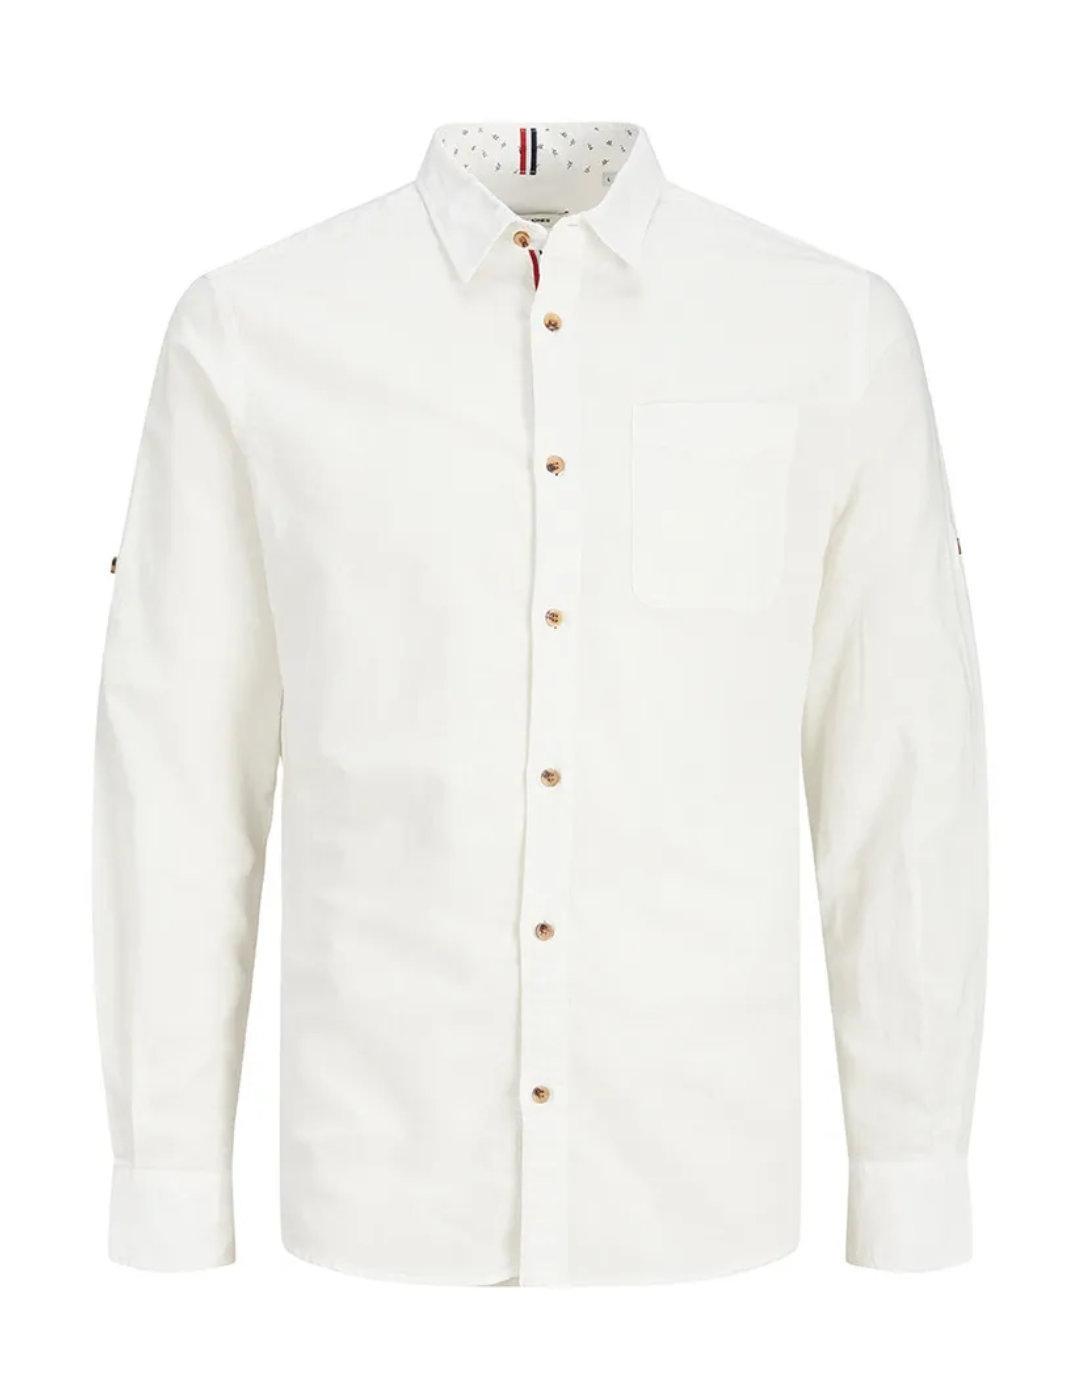 Camisa Jack&Jones Summer blanca de lino para hombre